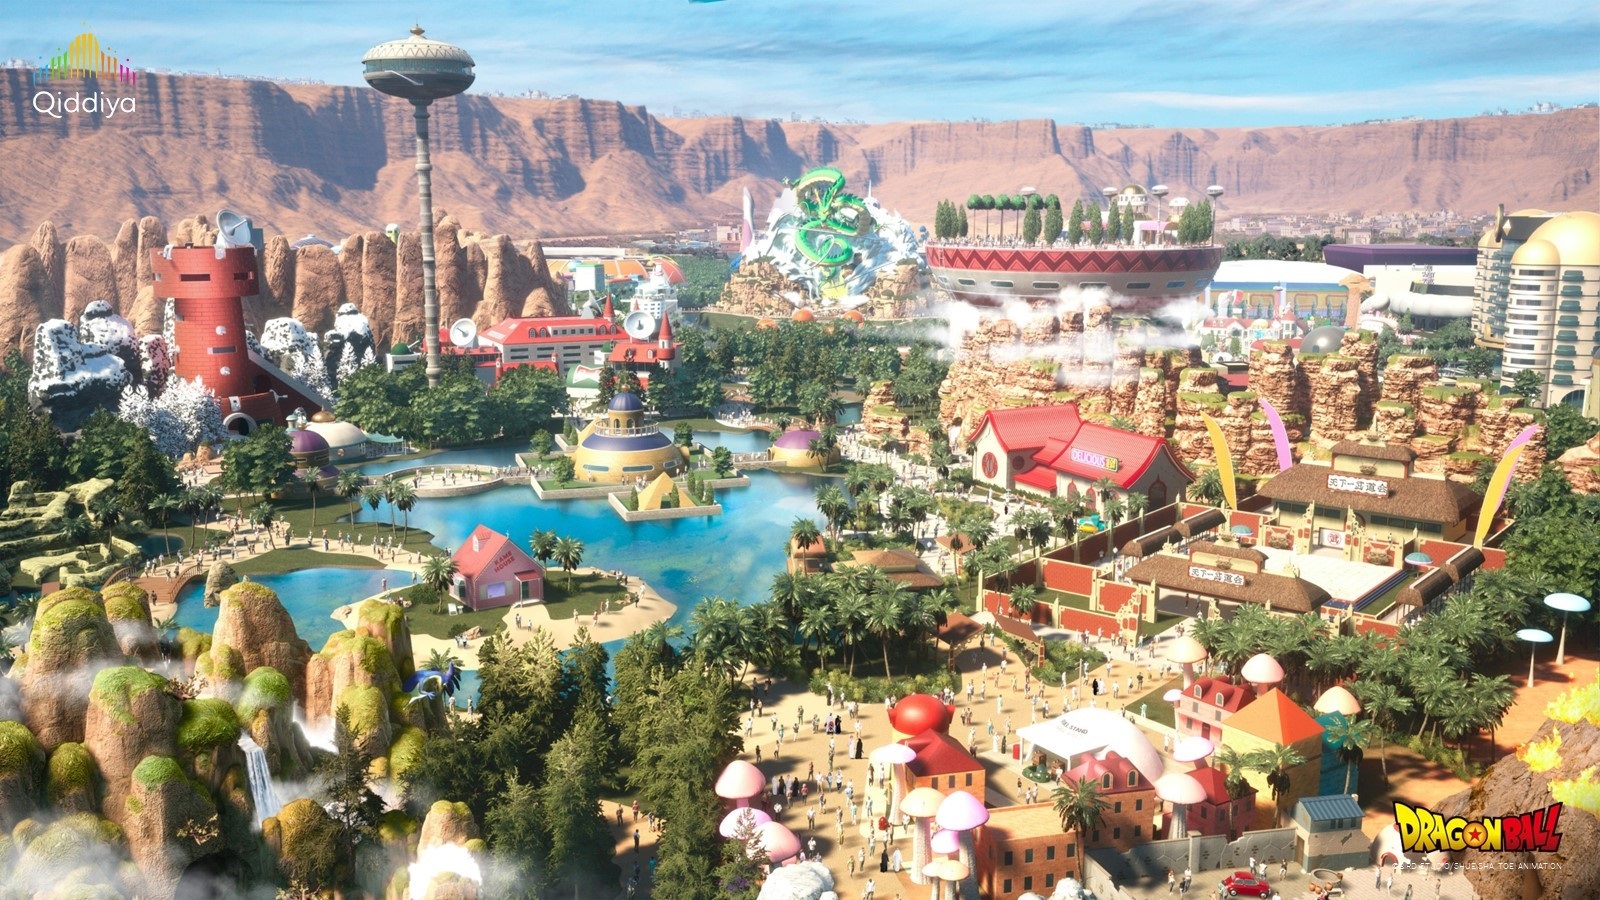 Taman Hiburan Dragon Ball akan Dibangun di Arab Saudi